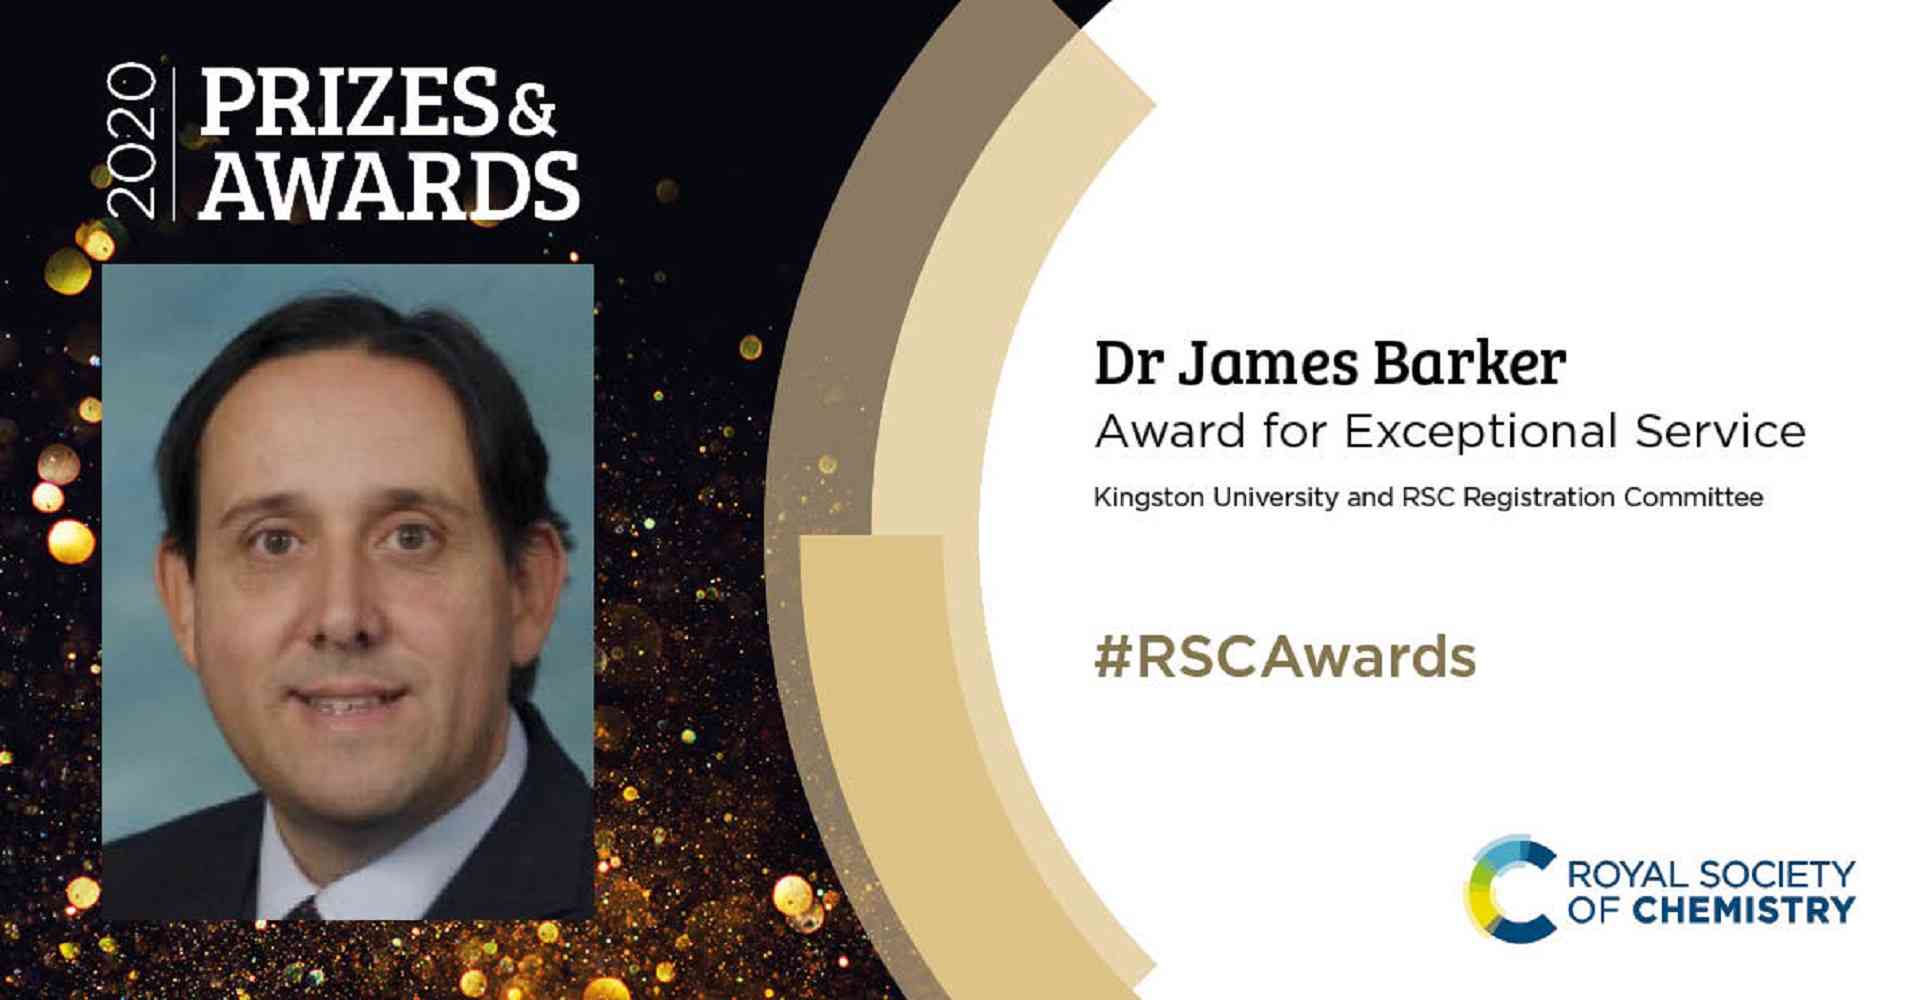 RSC Award - RSC Award for Exceptional Service